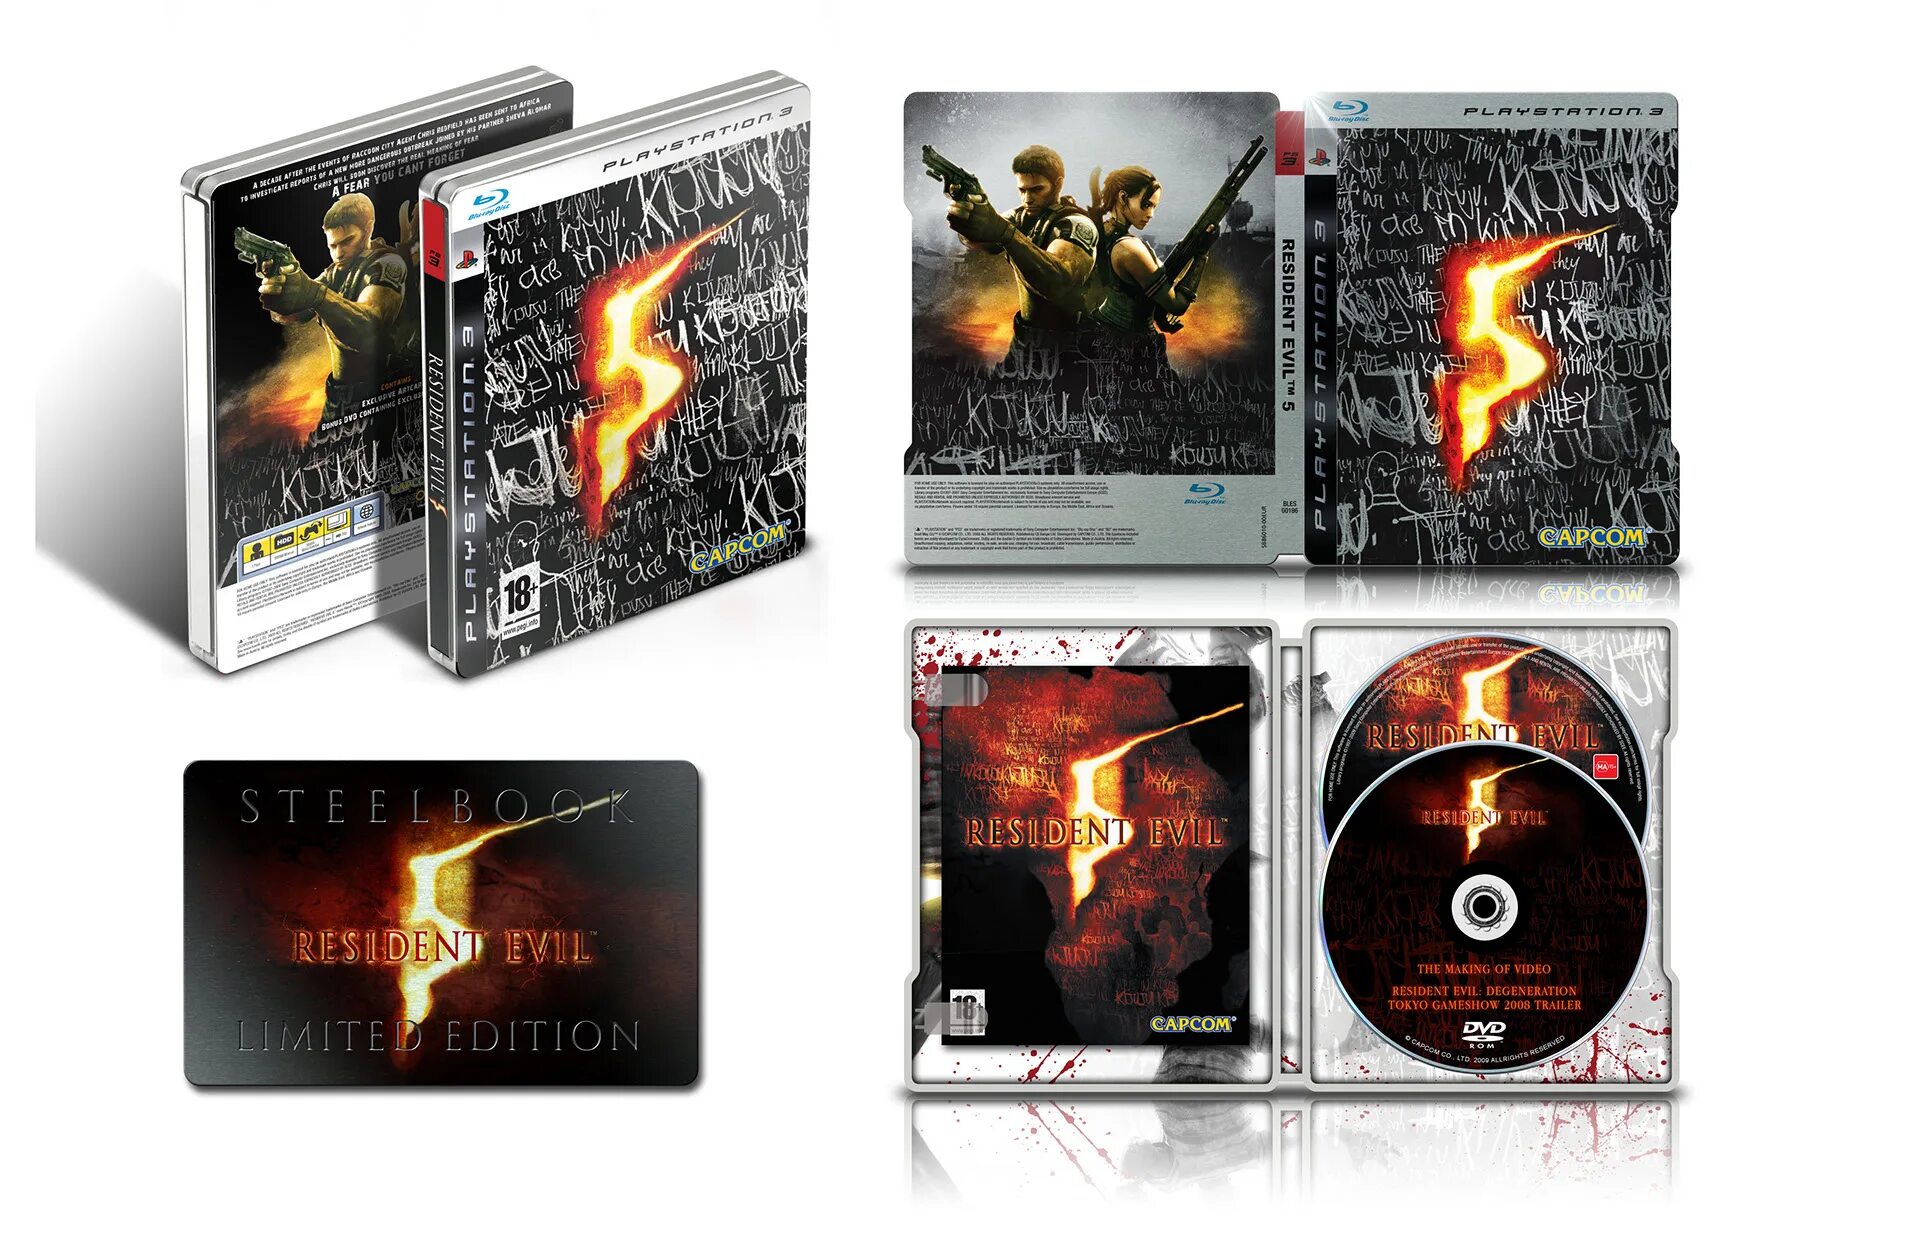 Resident Evil 5 ps3. Resident Evil 5 (Xbox 360). Resident Evil 5 ps3 обложка. Диск Resident Evil 3 ps5. Resident evil 5 xbox